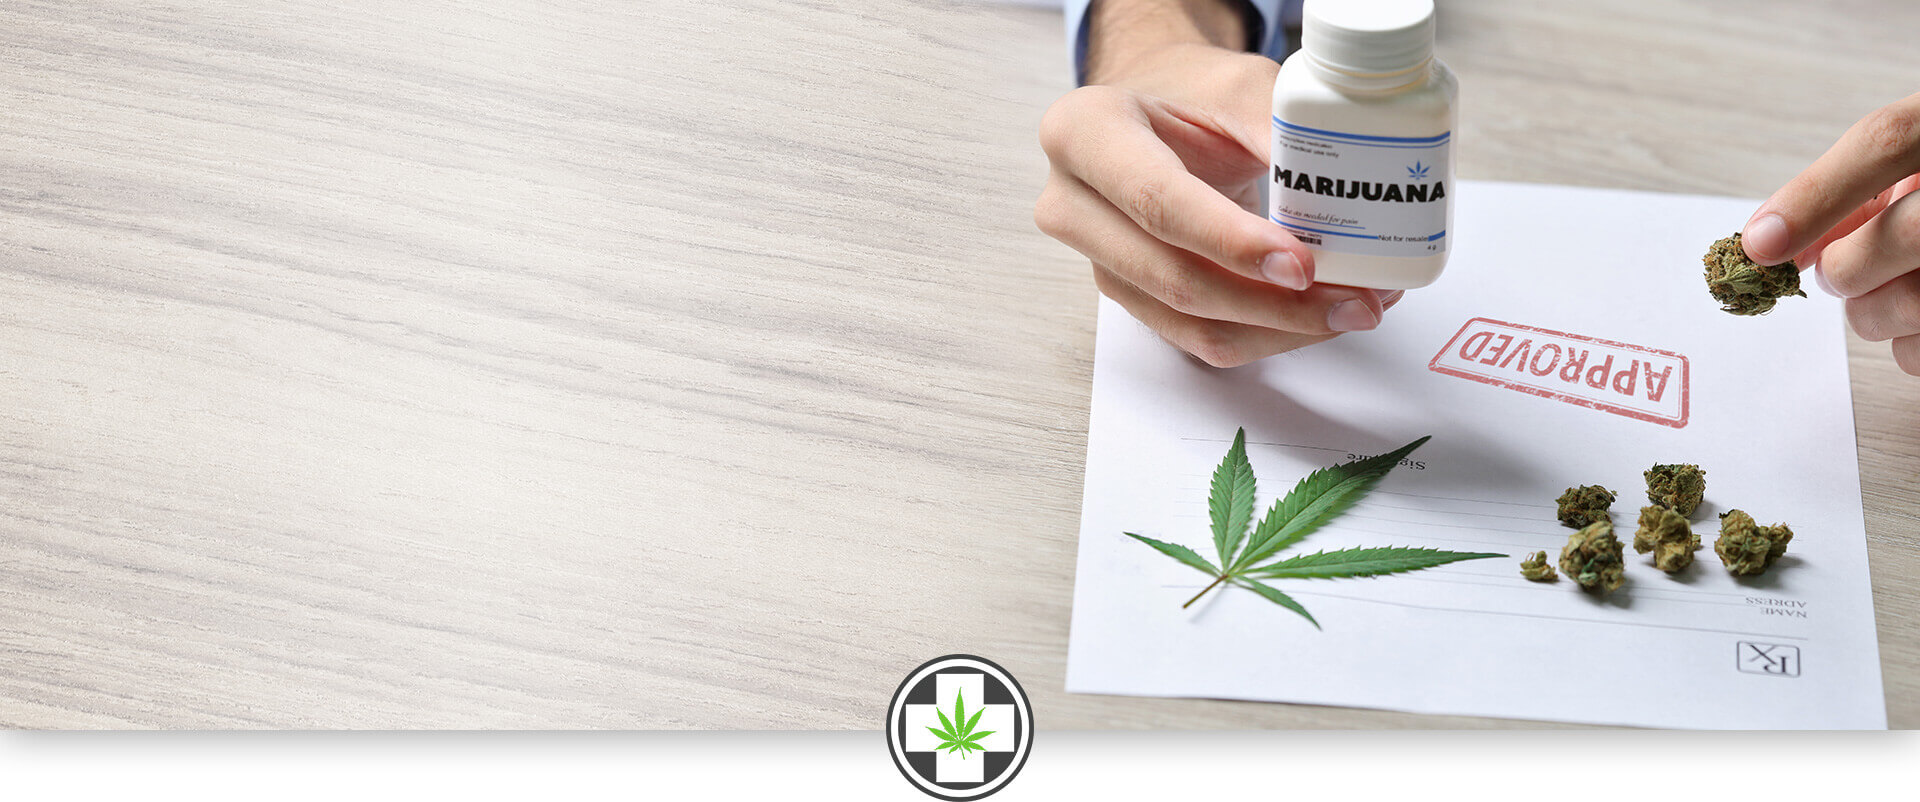 florida medical marijuana card